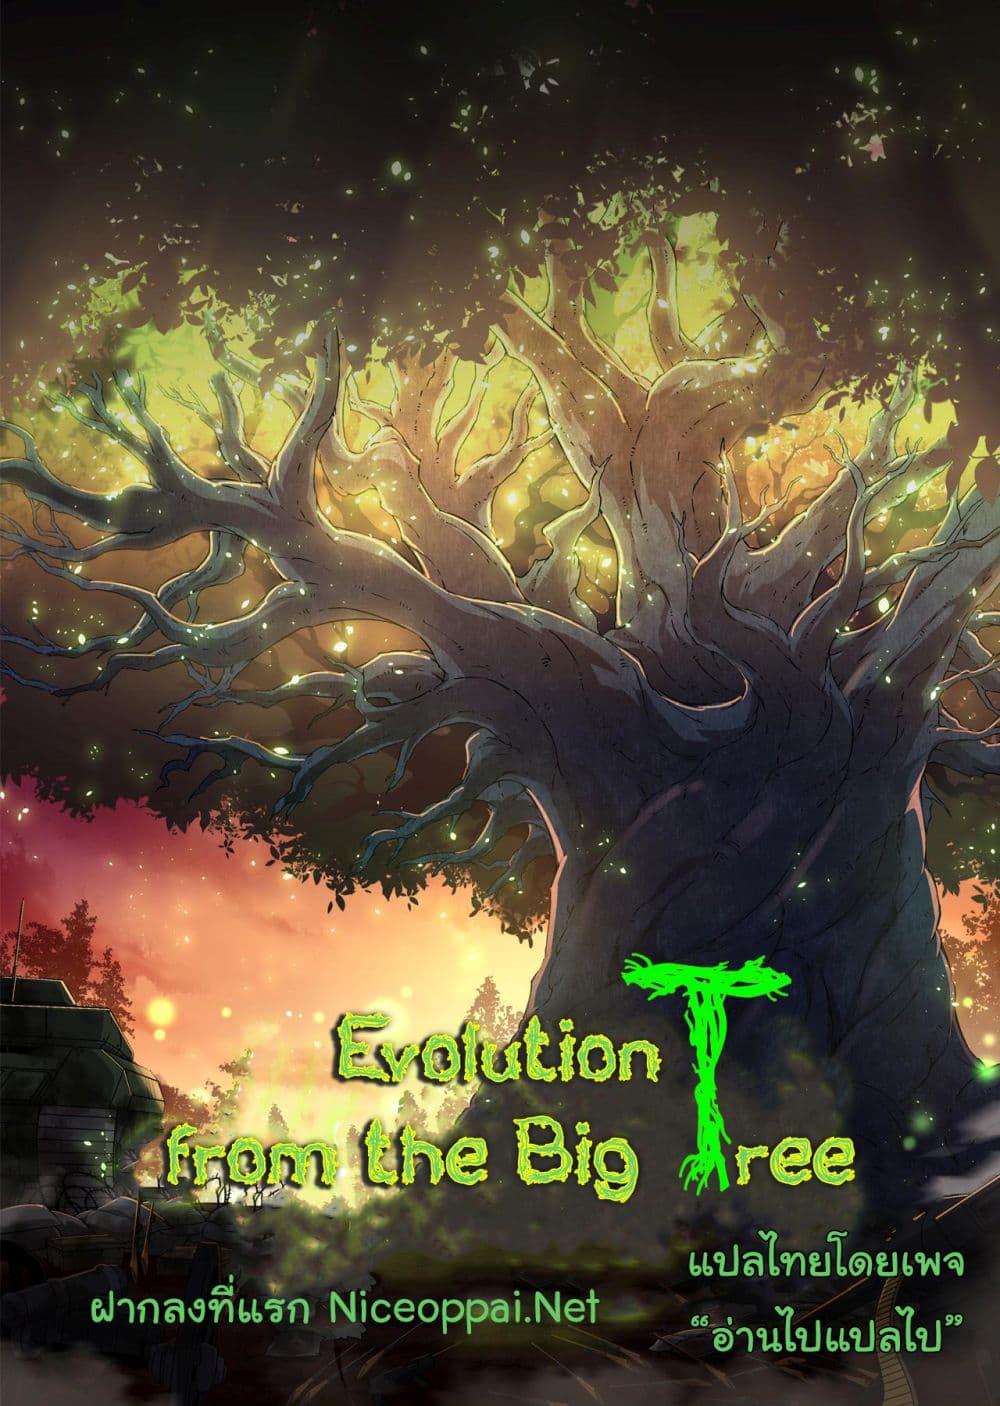 Evolution from the Big Tree Ã Â¸â€¢Ã Â¸Â­Ã Â¸â„¢Ã Â¸â€”Ã Â¸ÂµÃ Â¹Ë† 33 (51)